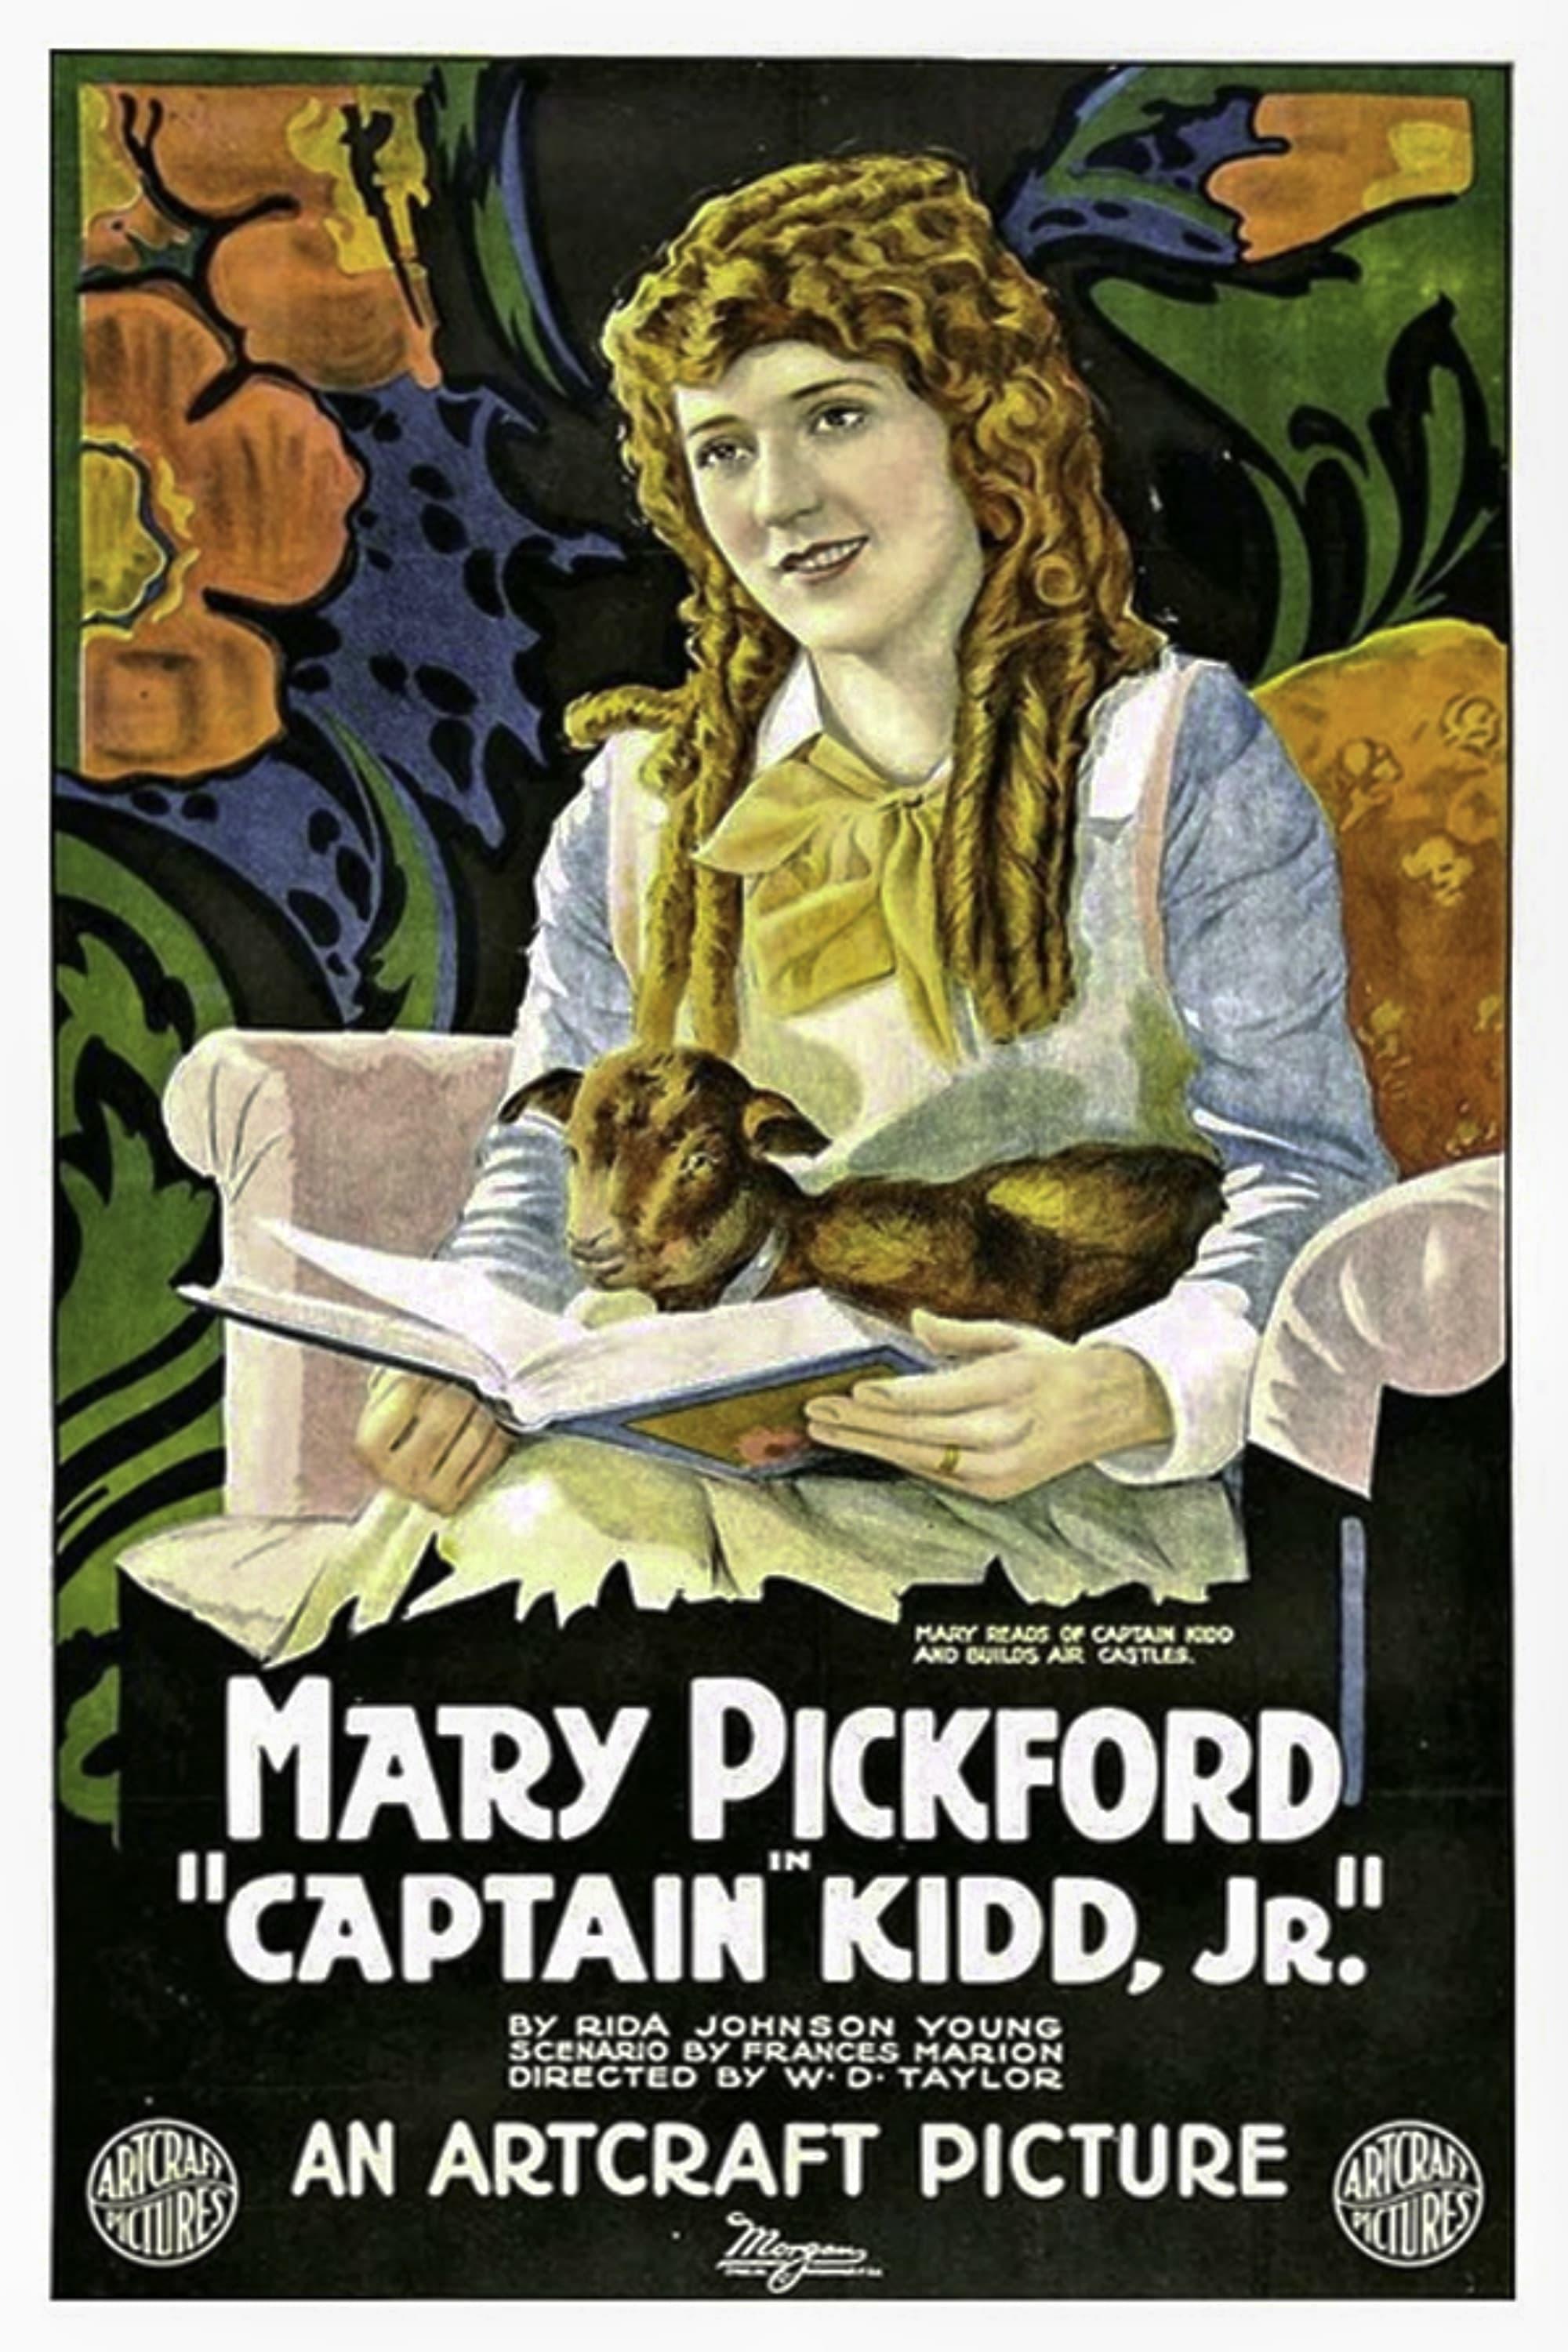 Captain Kidd, Jr. poster